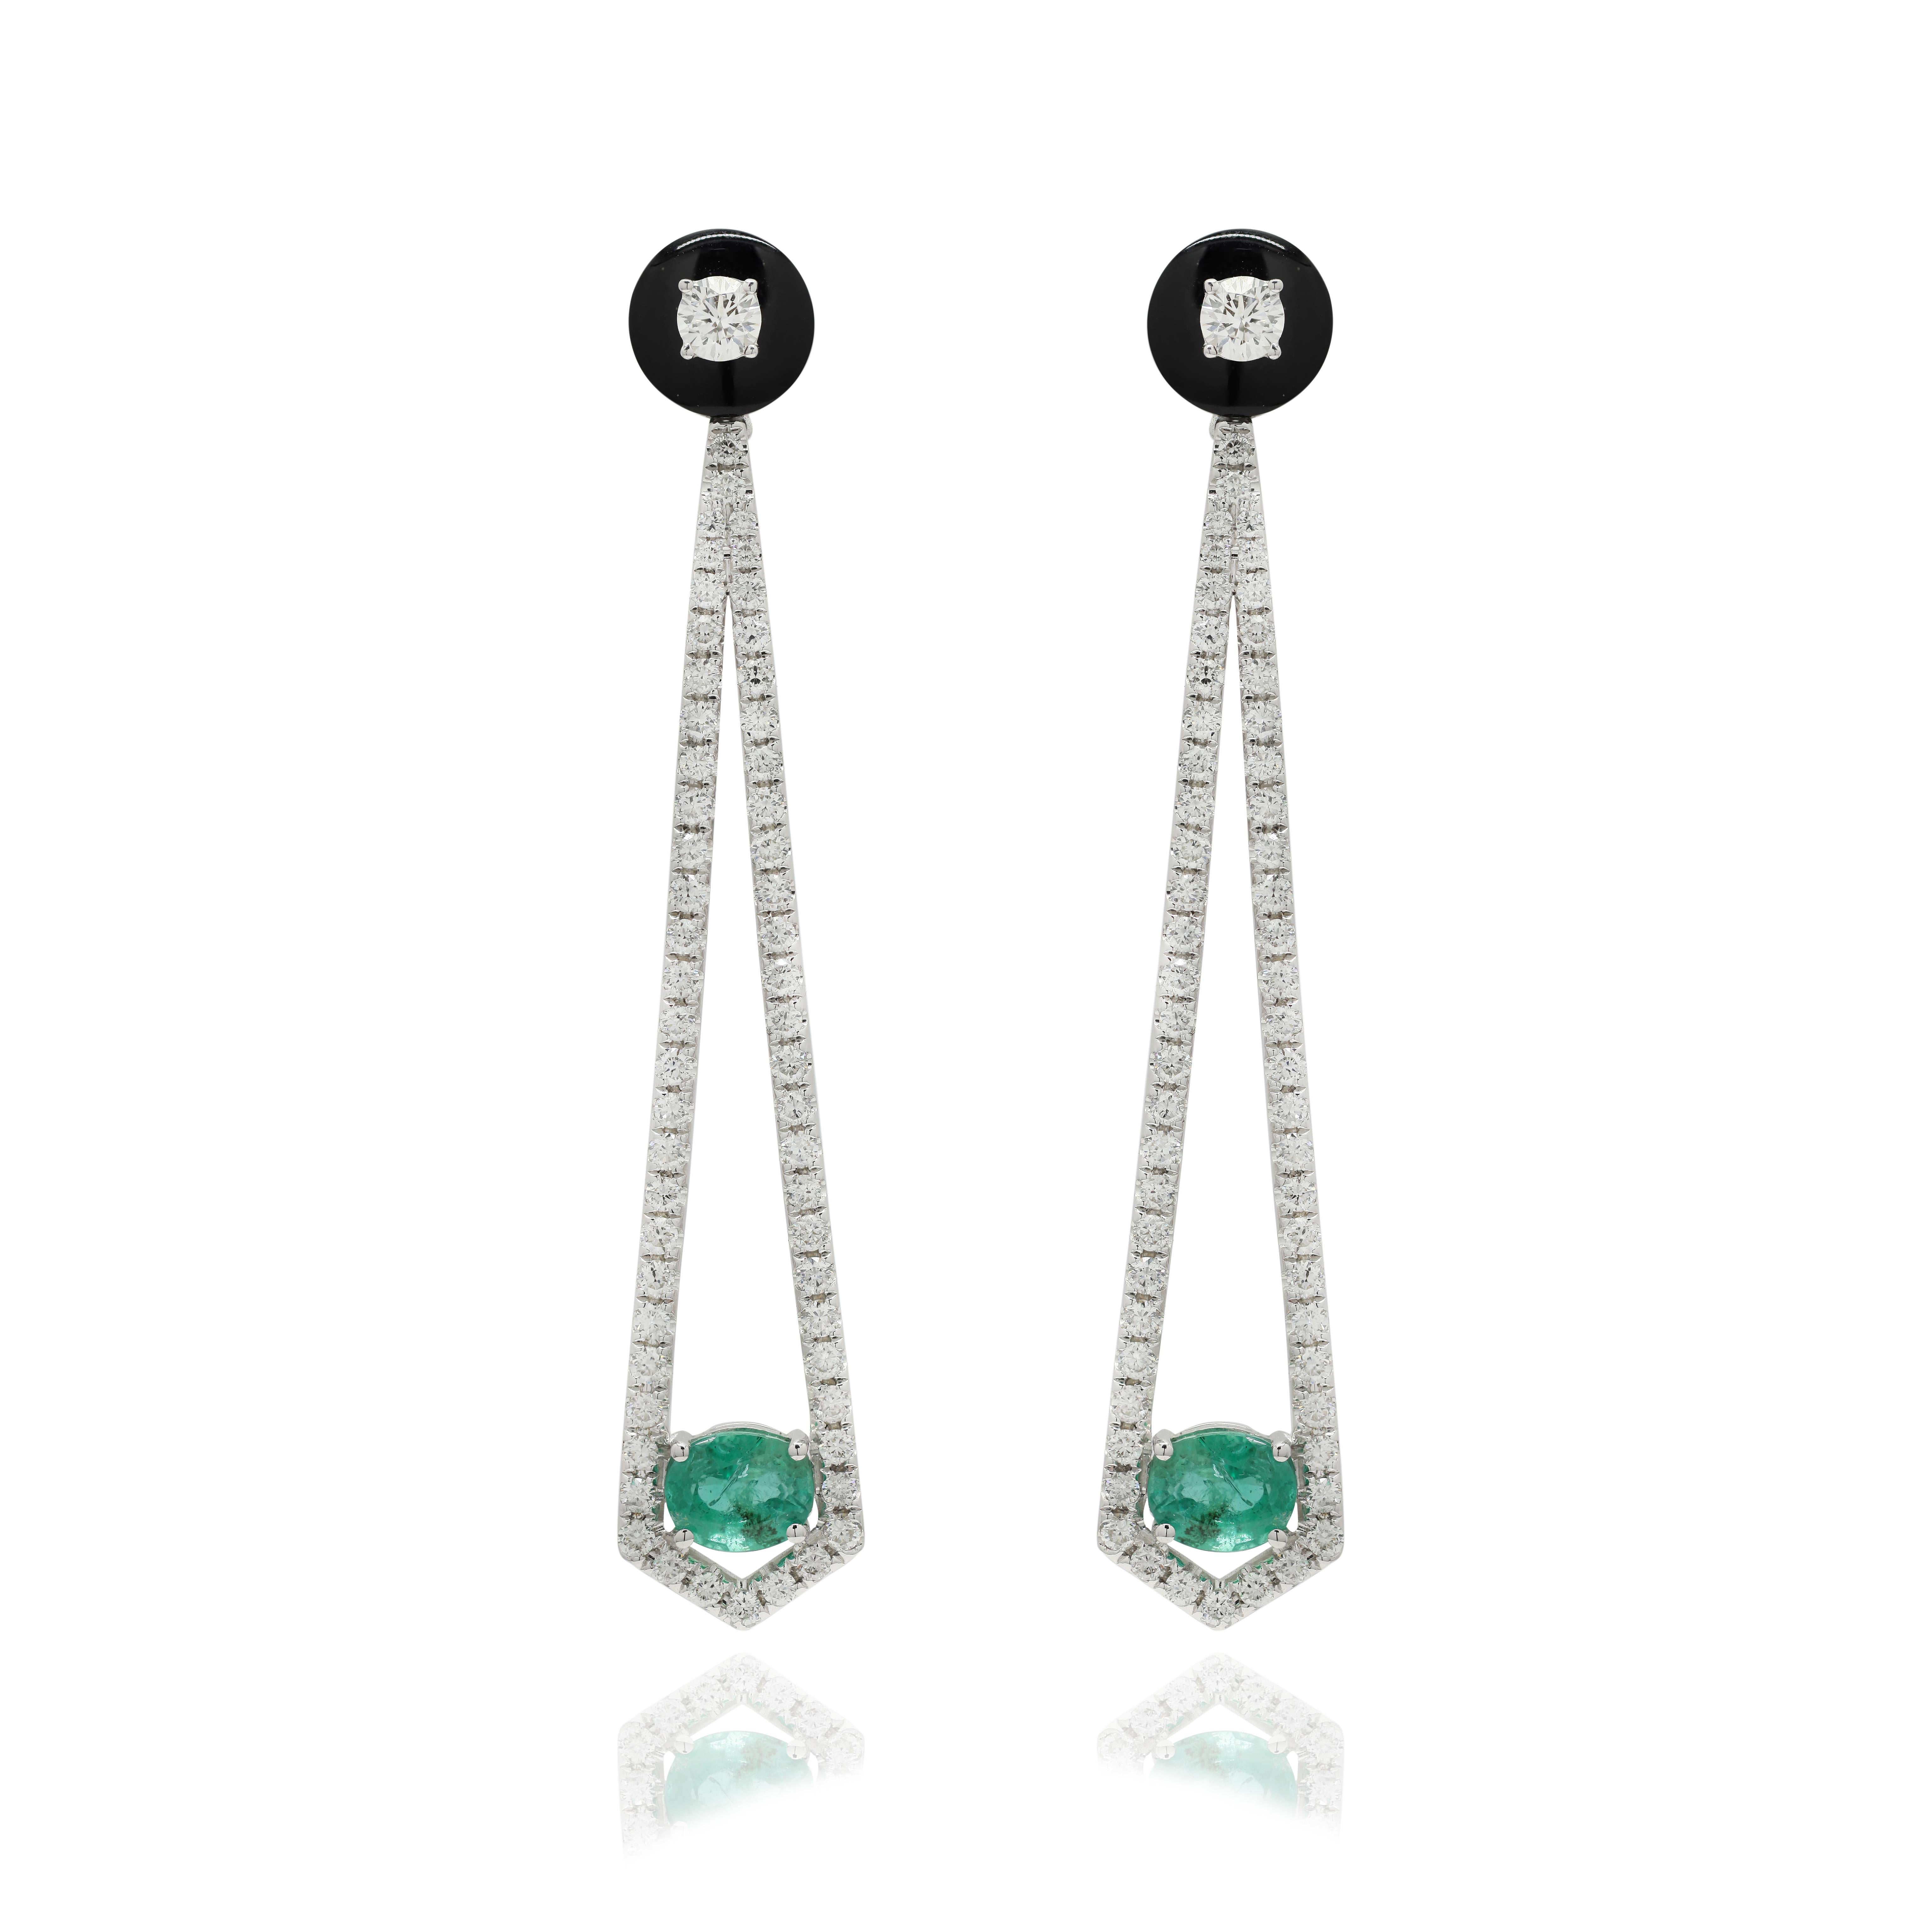 Designer-Ohrringe mit Smaragden und Diamanten, die Ihren Look unterstreichen. Diese Ohrringe mit ovalem Schliff sorgen für einen funkelnden, luxuriösen Look.
Wenn Sie einen Hang zu einzigartigen Stilen haben, ist dieses Schmuckstück genau das